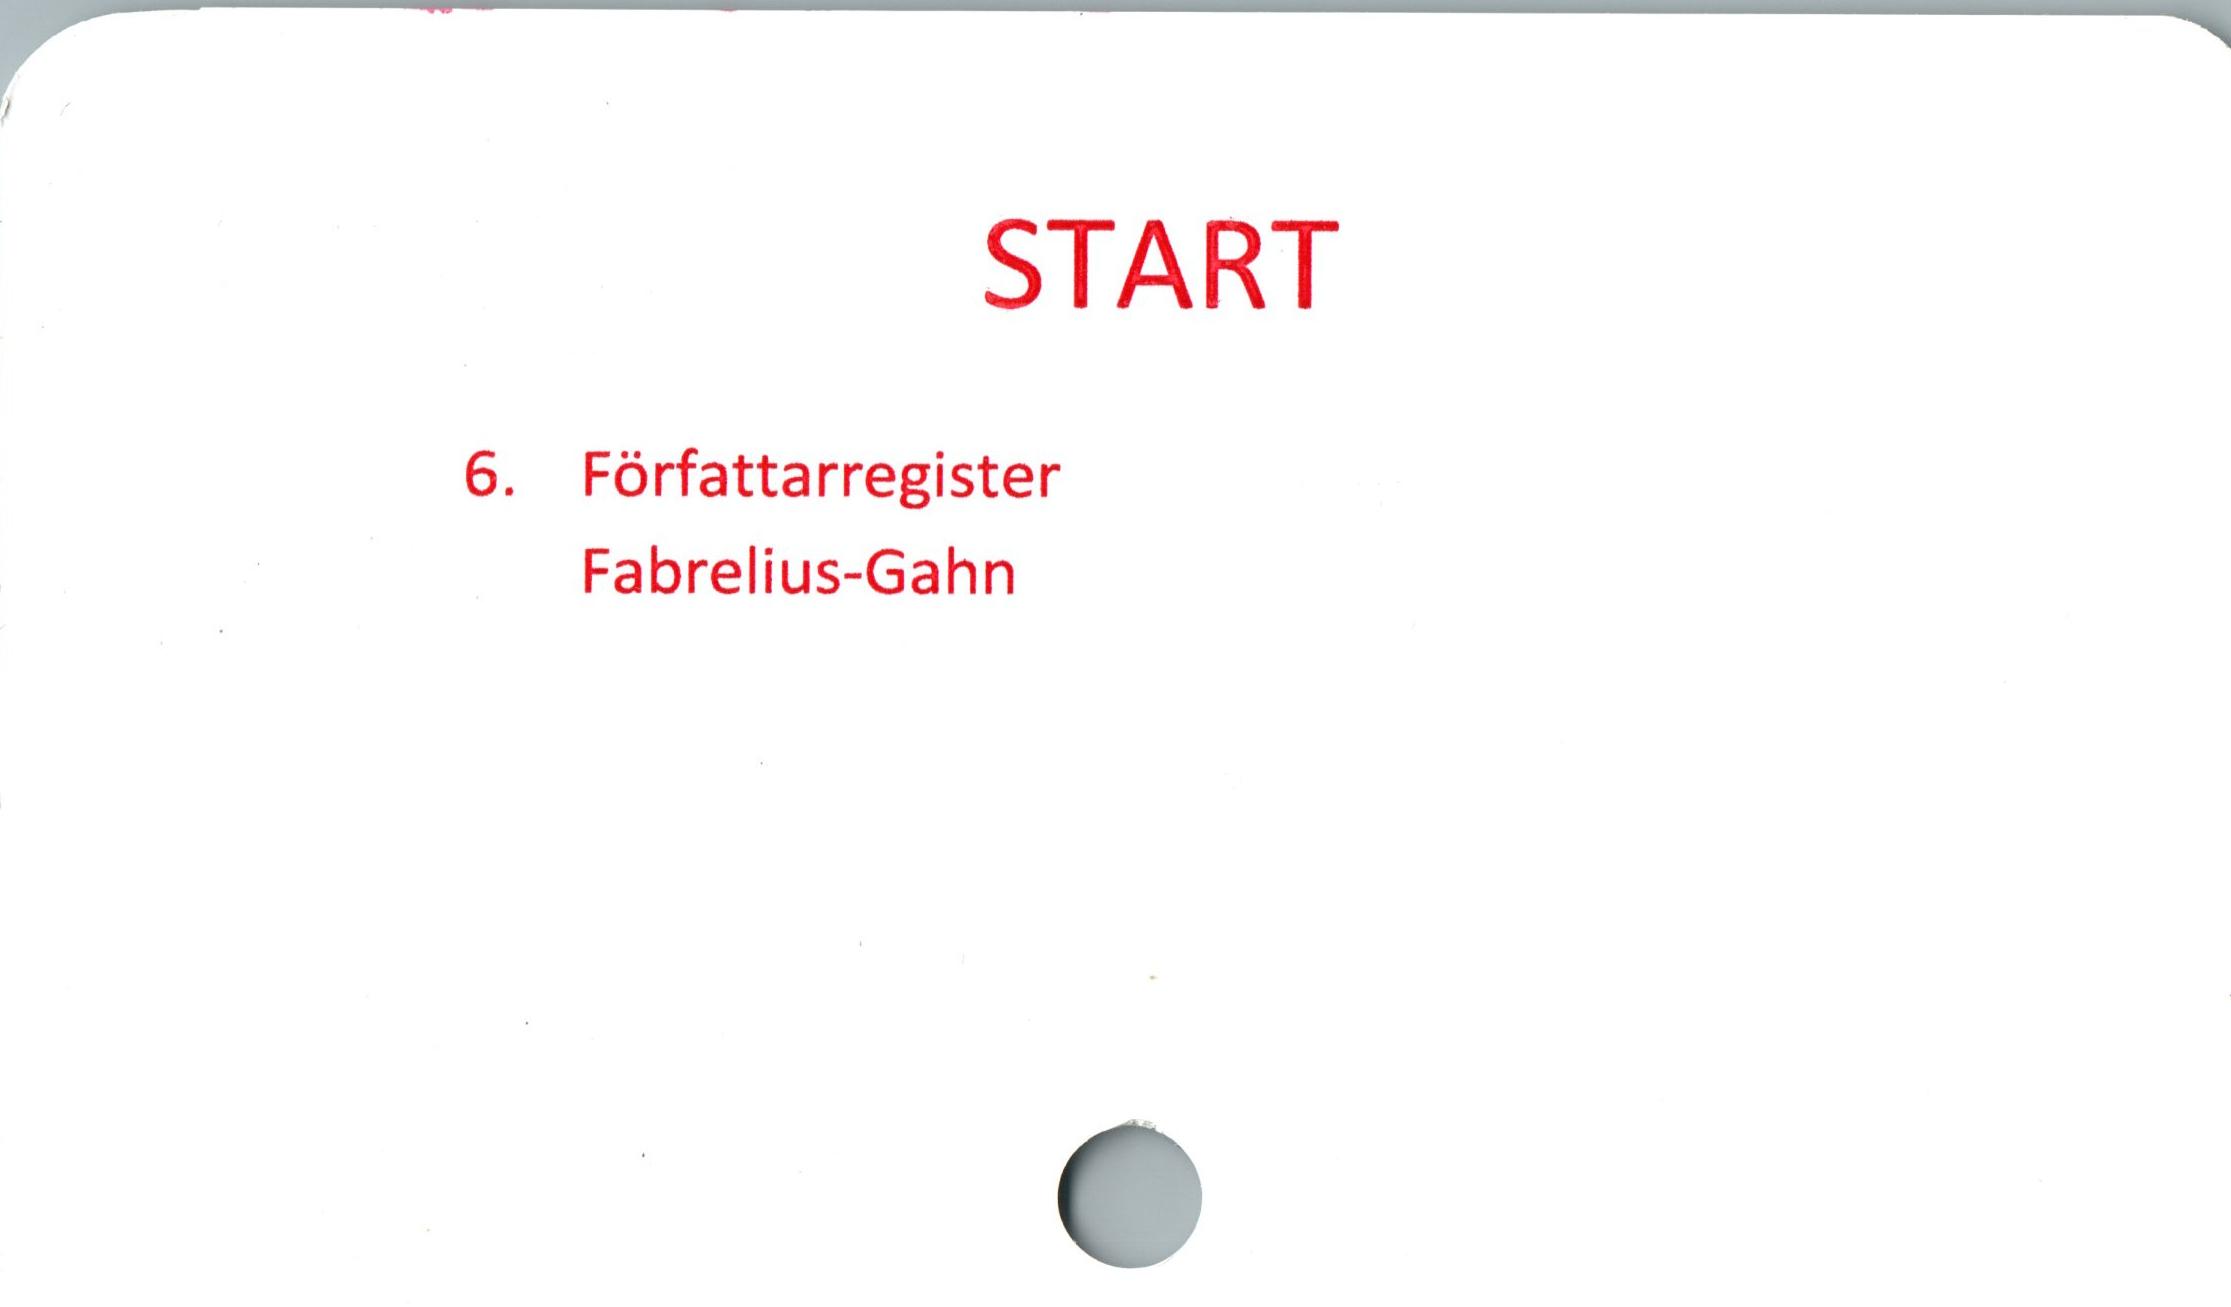  ﻿START

6. Författarregister
Fabrelius-Gahn